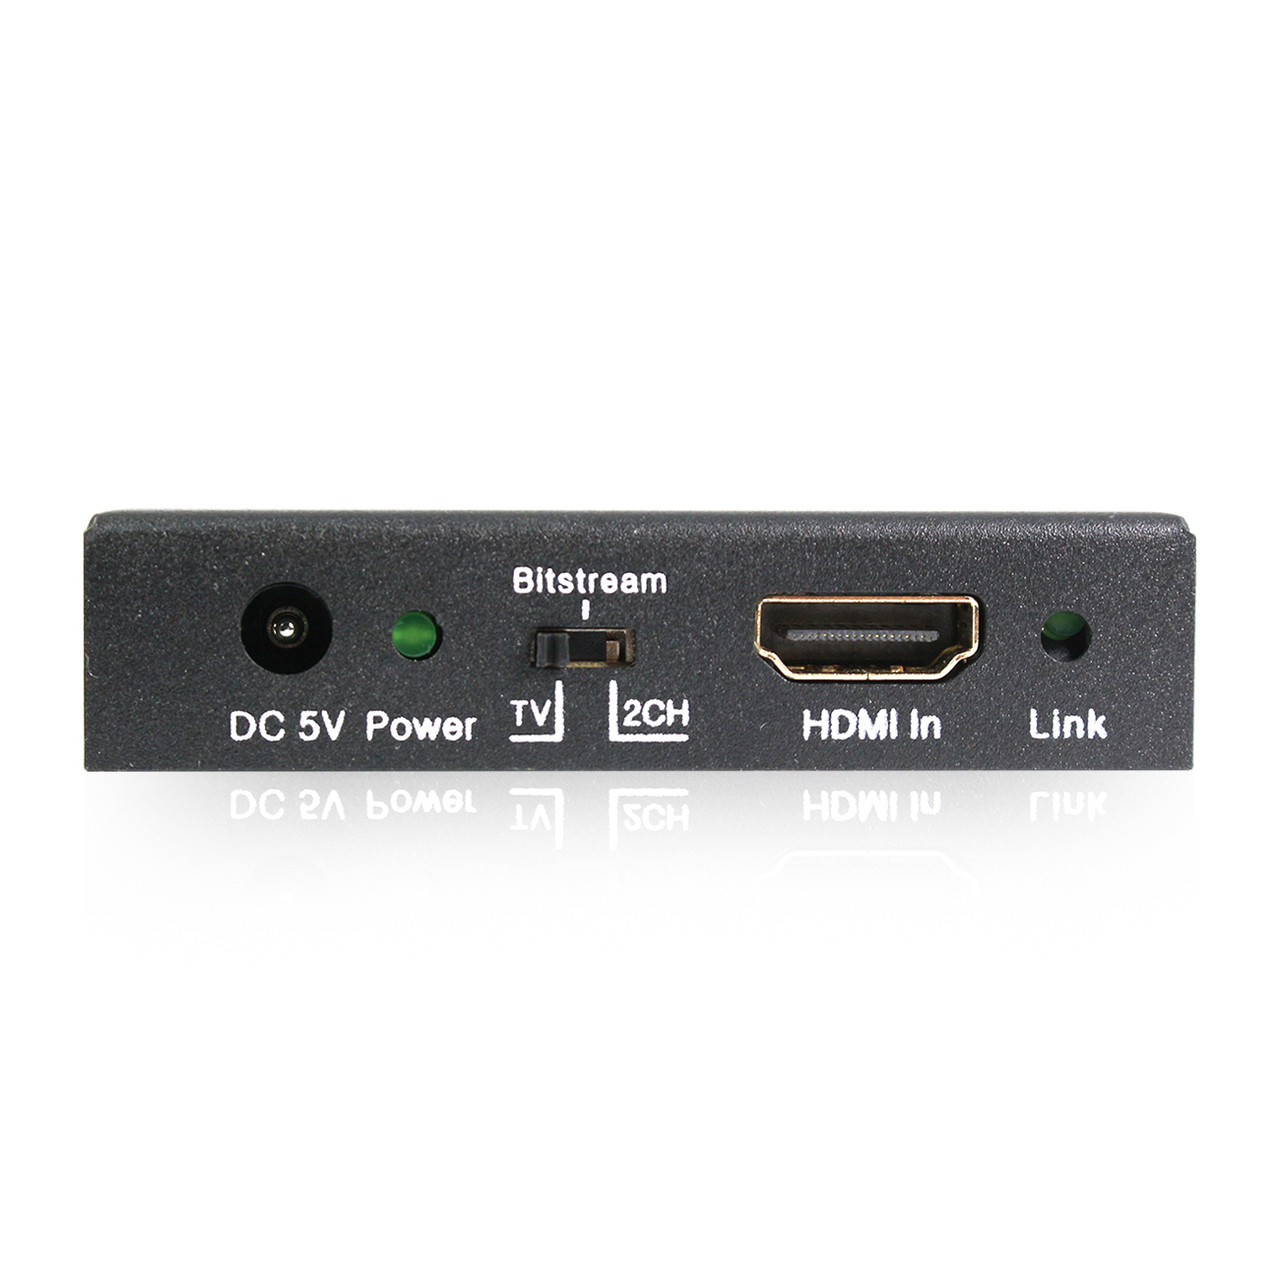 Câble HDMI 2.0 Fibre Optique HDCP 2.2 4K HDR ARC 3m - Audiophonics